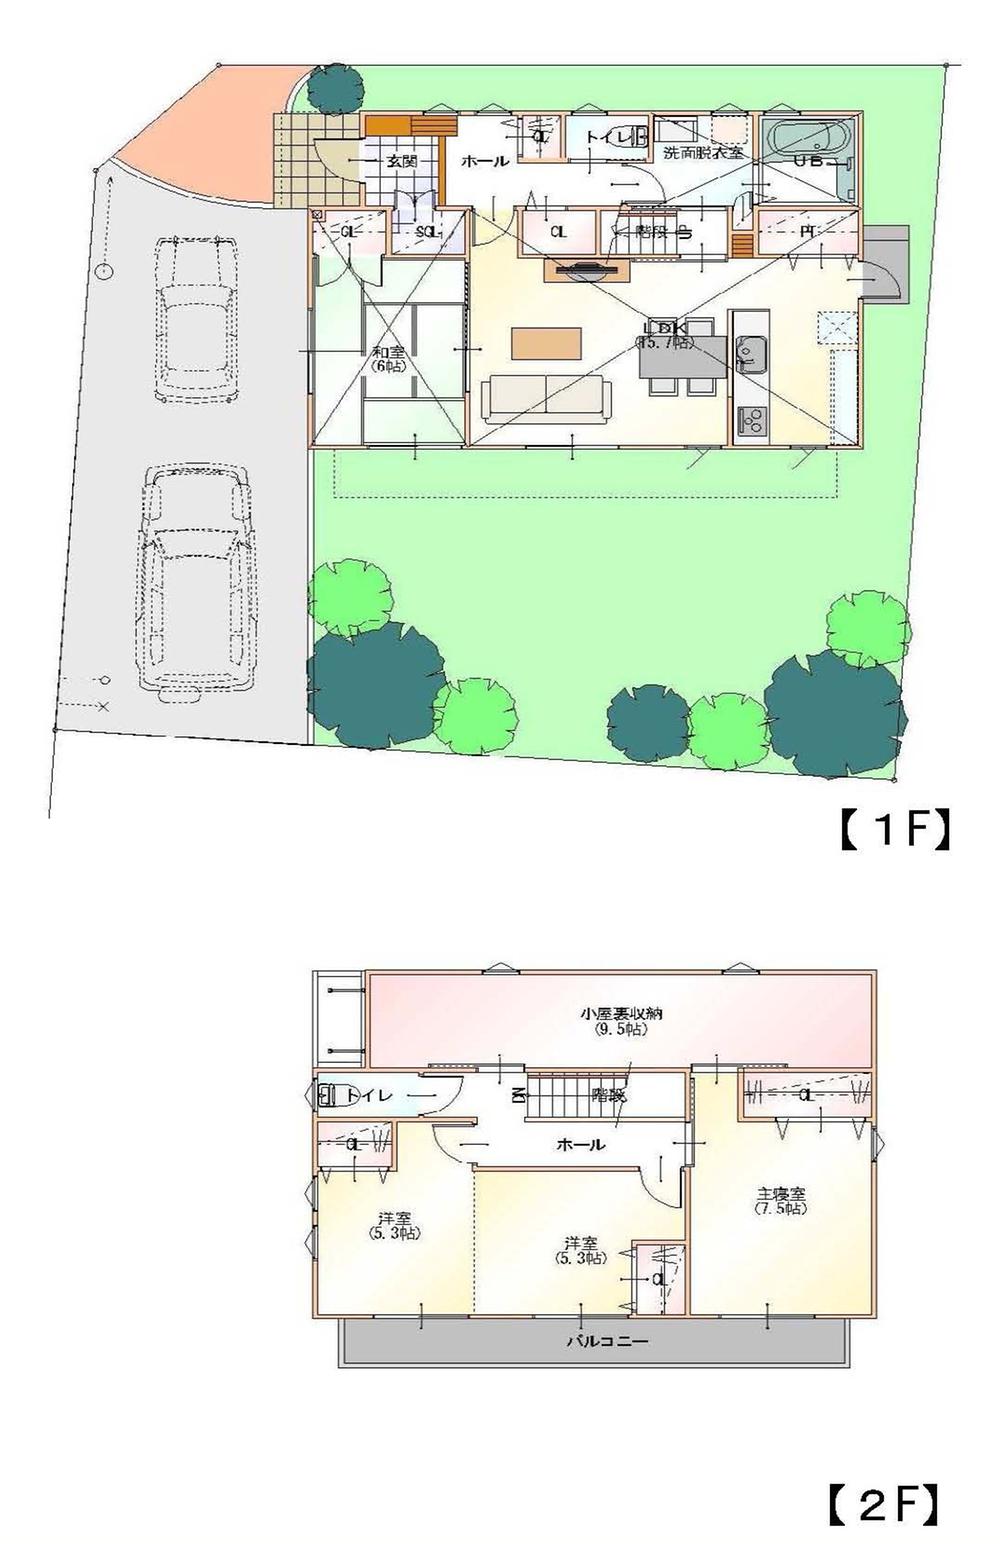 Floor plan. 23.8 million yen, 4LDK, Land area 190.1 sq m , Building area 102.67 sq m